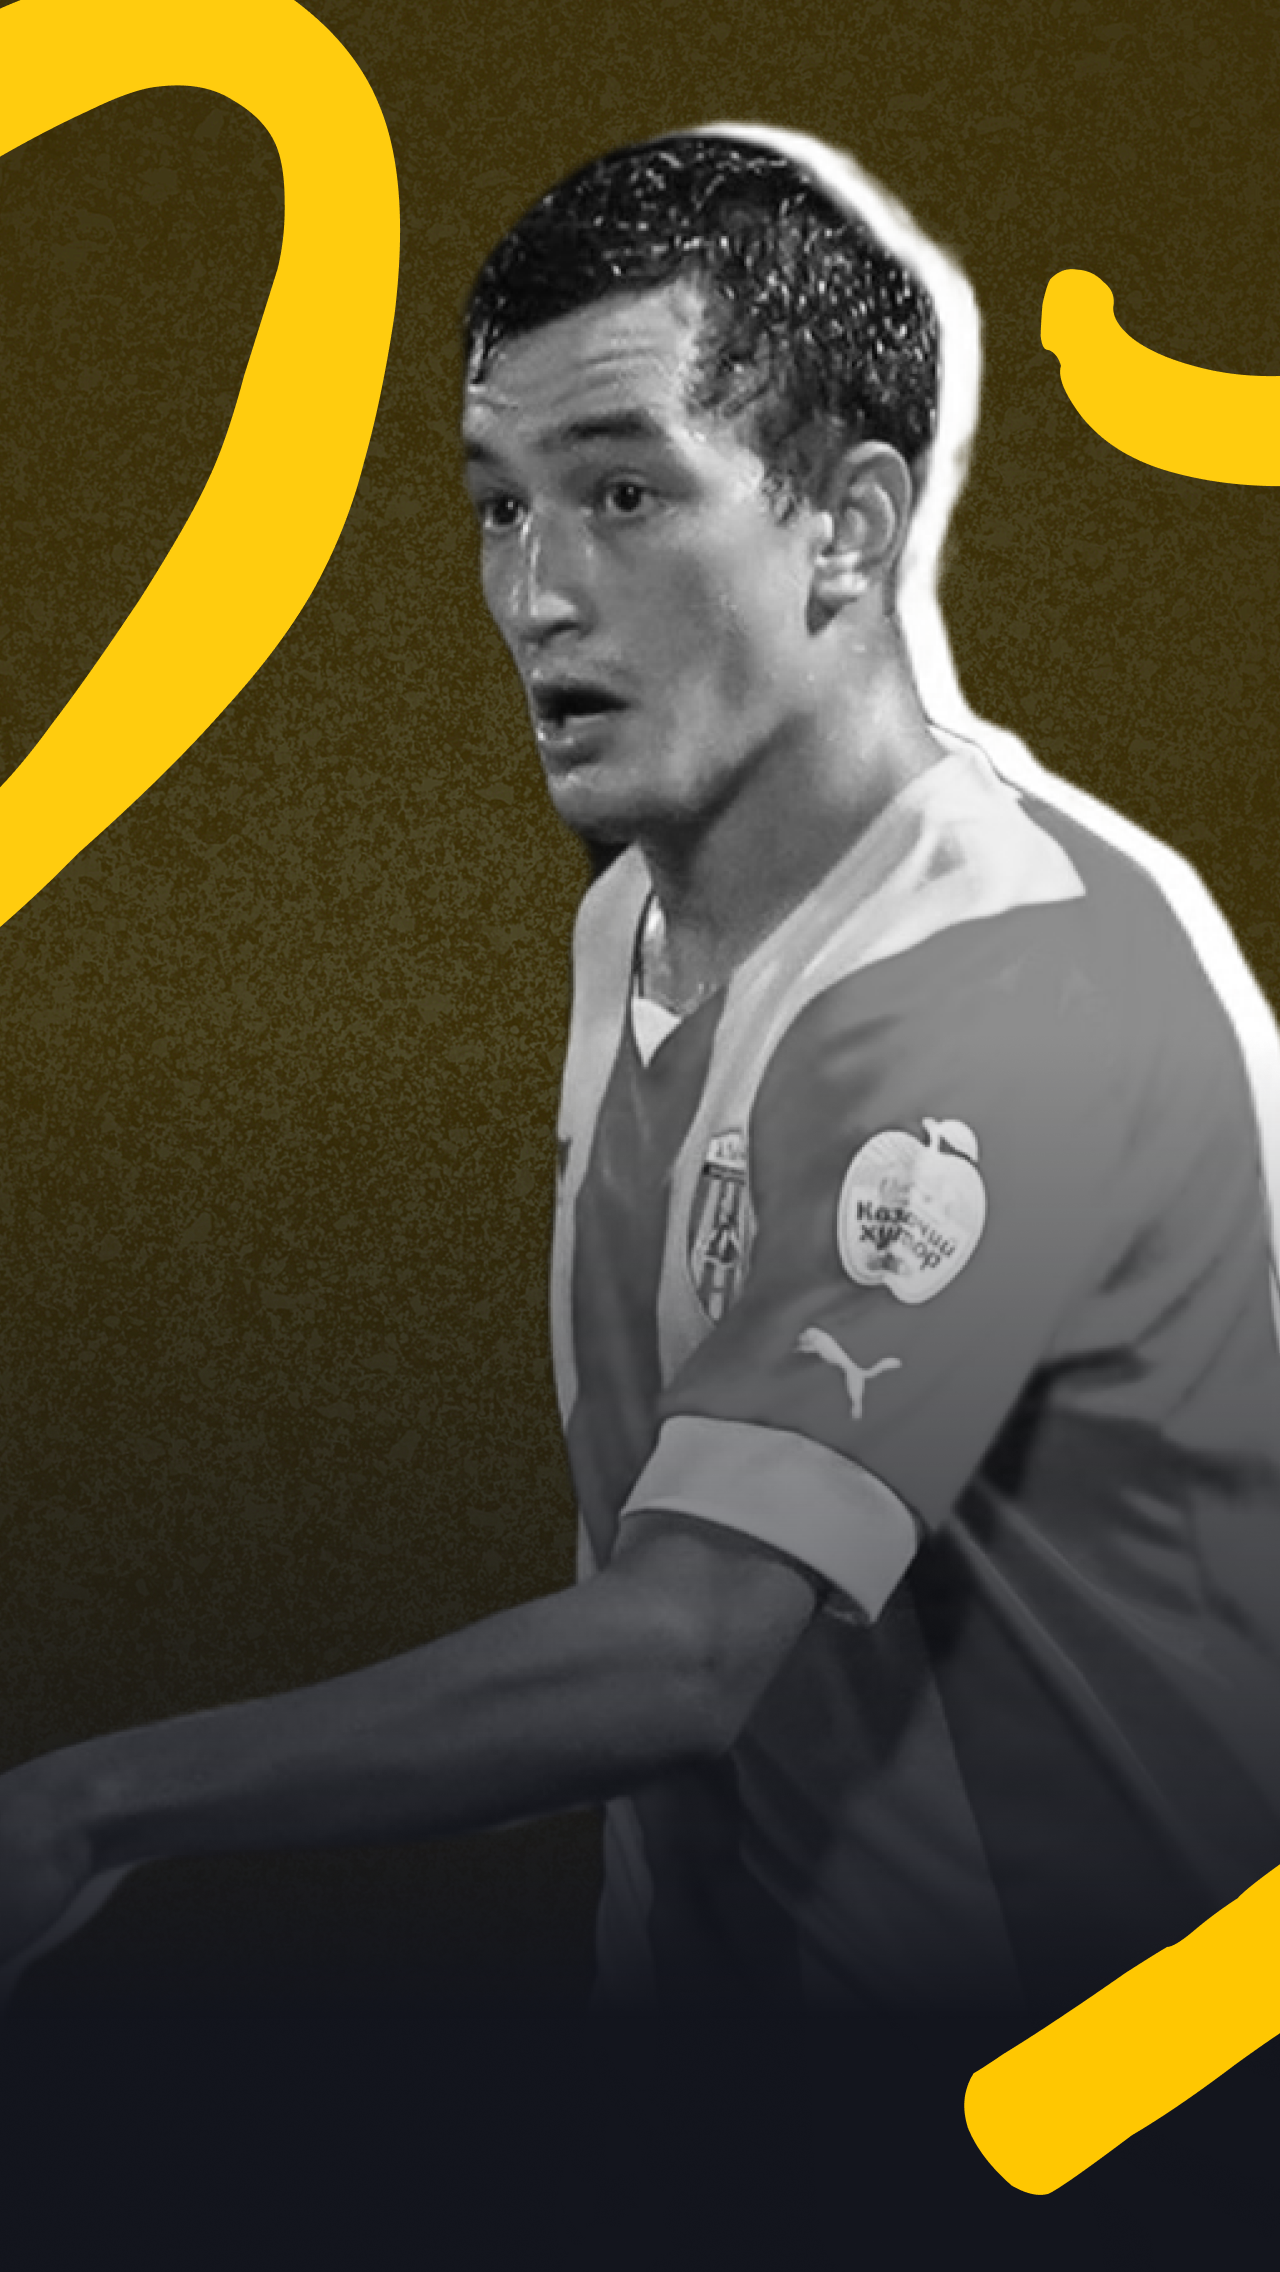 Галоян перешёл в «Аланию» перед стартом сезона из «Велеса» и сразу влился в команду. 23-летний футболист забивает стабильно, но октябрь получился для него особенно продуктивным.